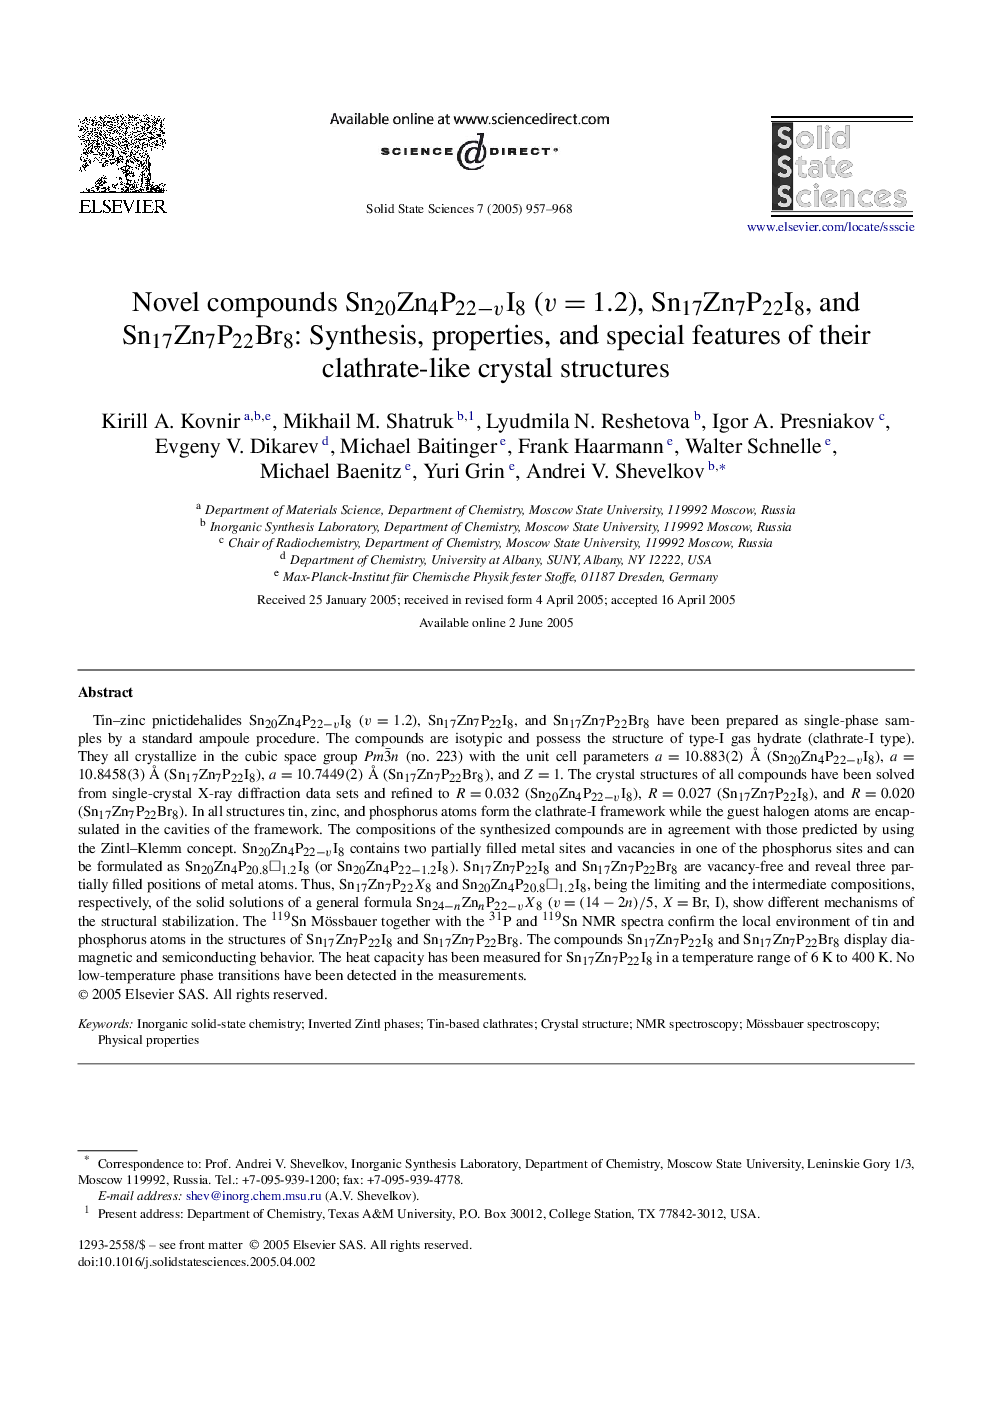 Novel compounds Sn20Zn4P22âvI8 (v=1.2), Sn17Zn7P22I8, and Sn17Zn7P22Br8: Synthesis, properties, and special features of their clathrate-like crystal structures